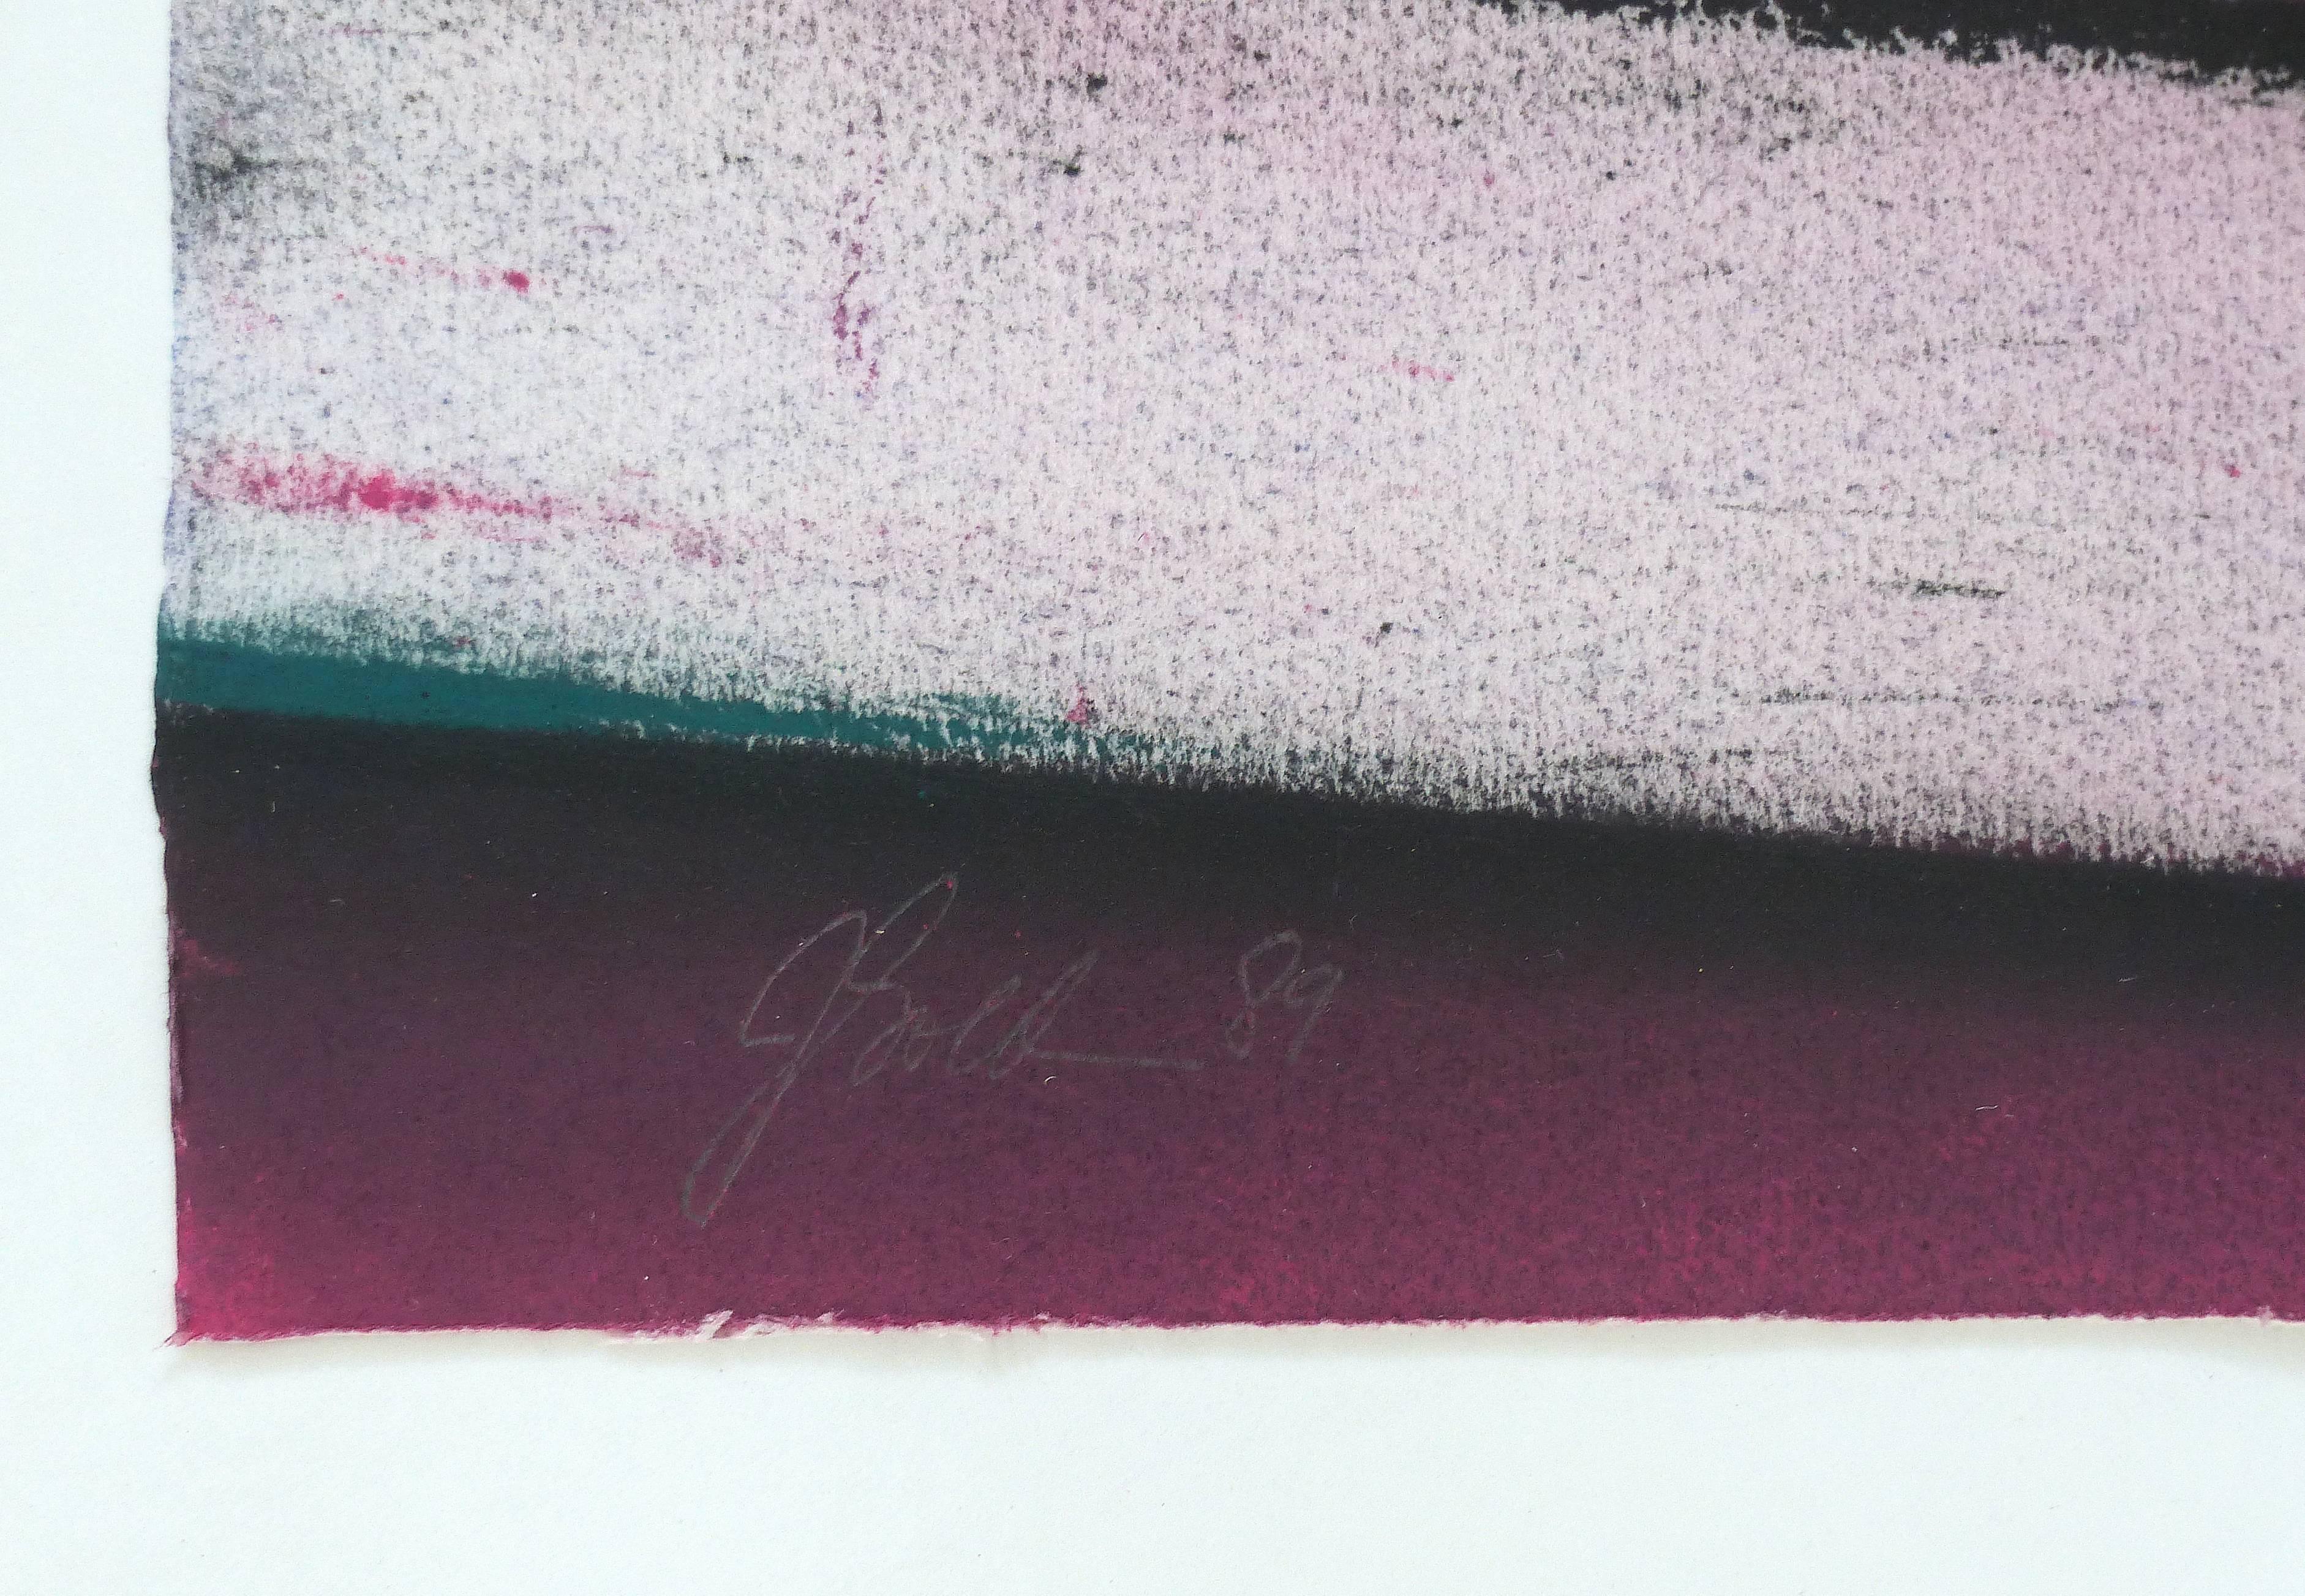 1989 Peinture postmoderne à base de techniques mixtes

L'œuvre proposée à la vente est un mixed-media postmoderne de 1989 avec une grande composition et des couleurs saturées sur papier. Le mélange d'acrylique et de pastels est joliment présenté